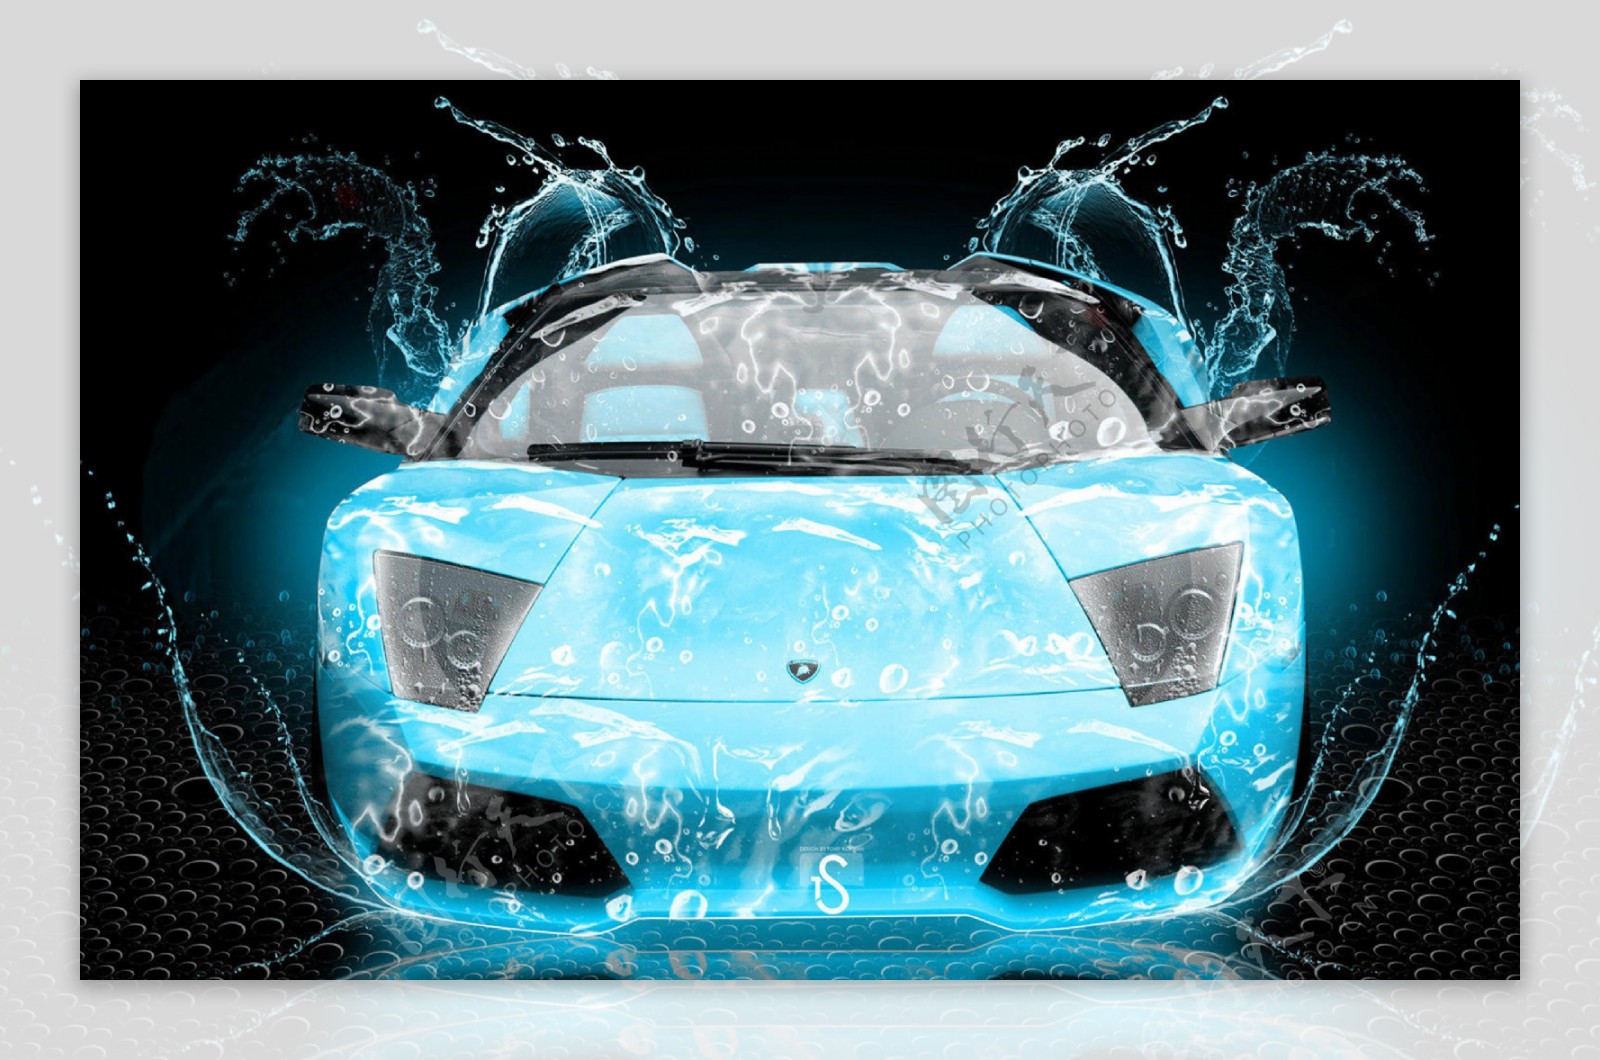 水元素跑车